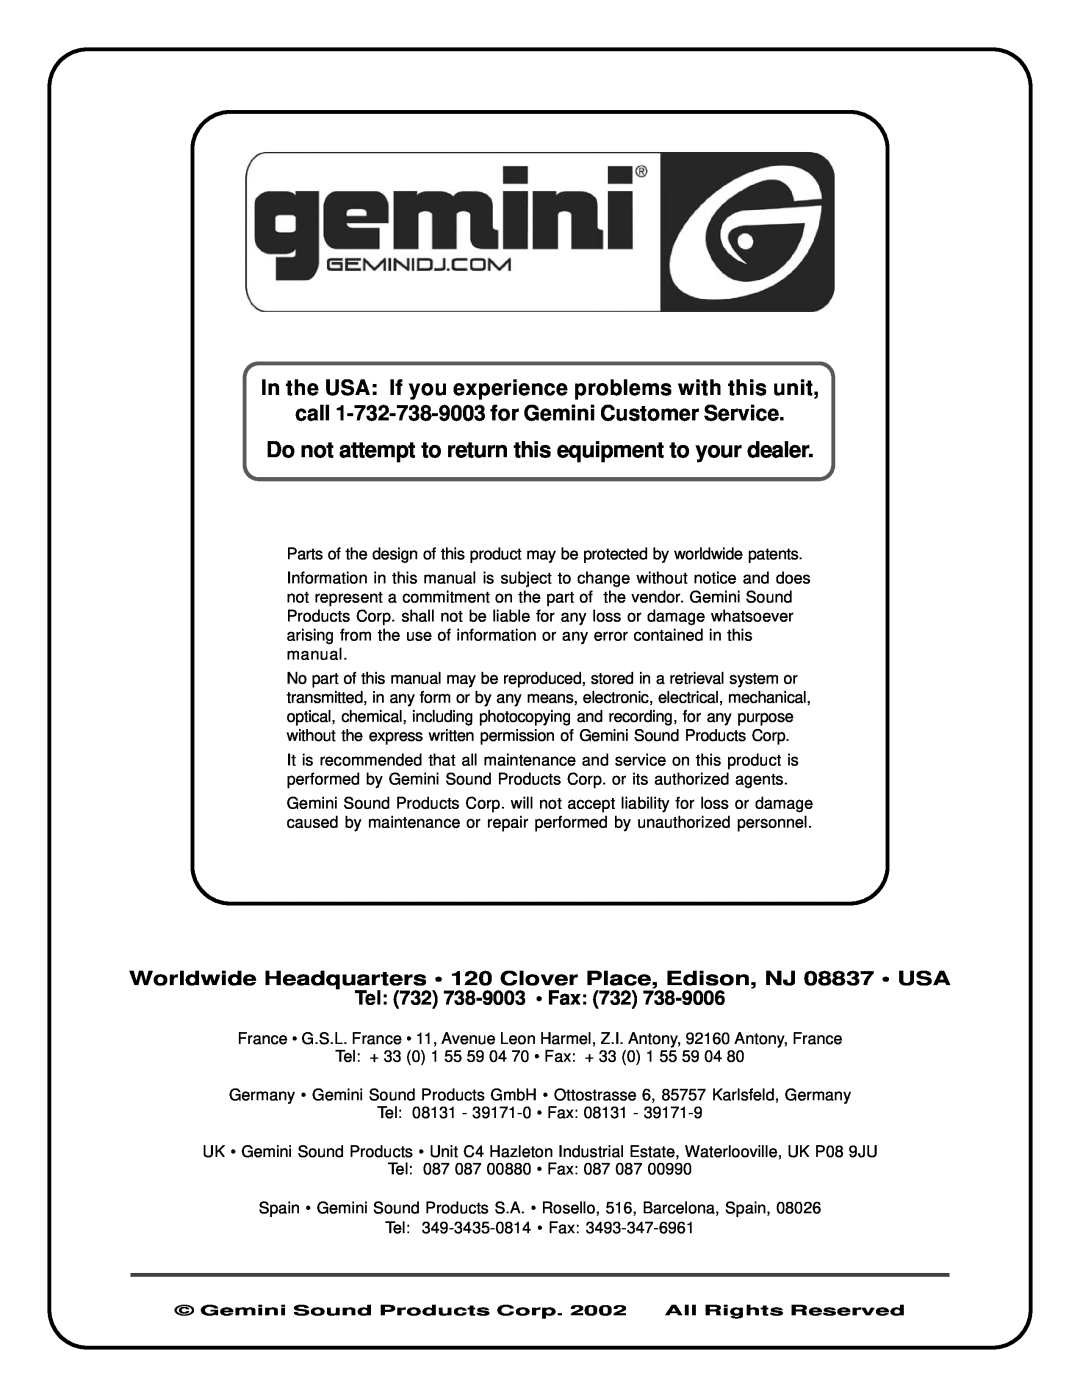 Gemini CD-1800X manual call 1-732-738-9003for Gemini Customer Service, Tel 732 738-9003 Fax 